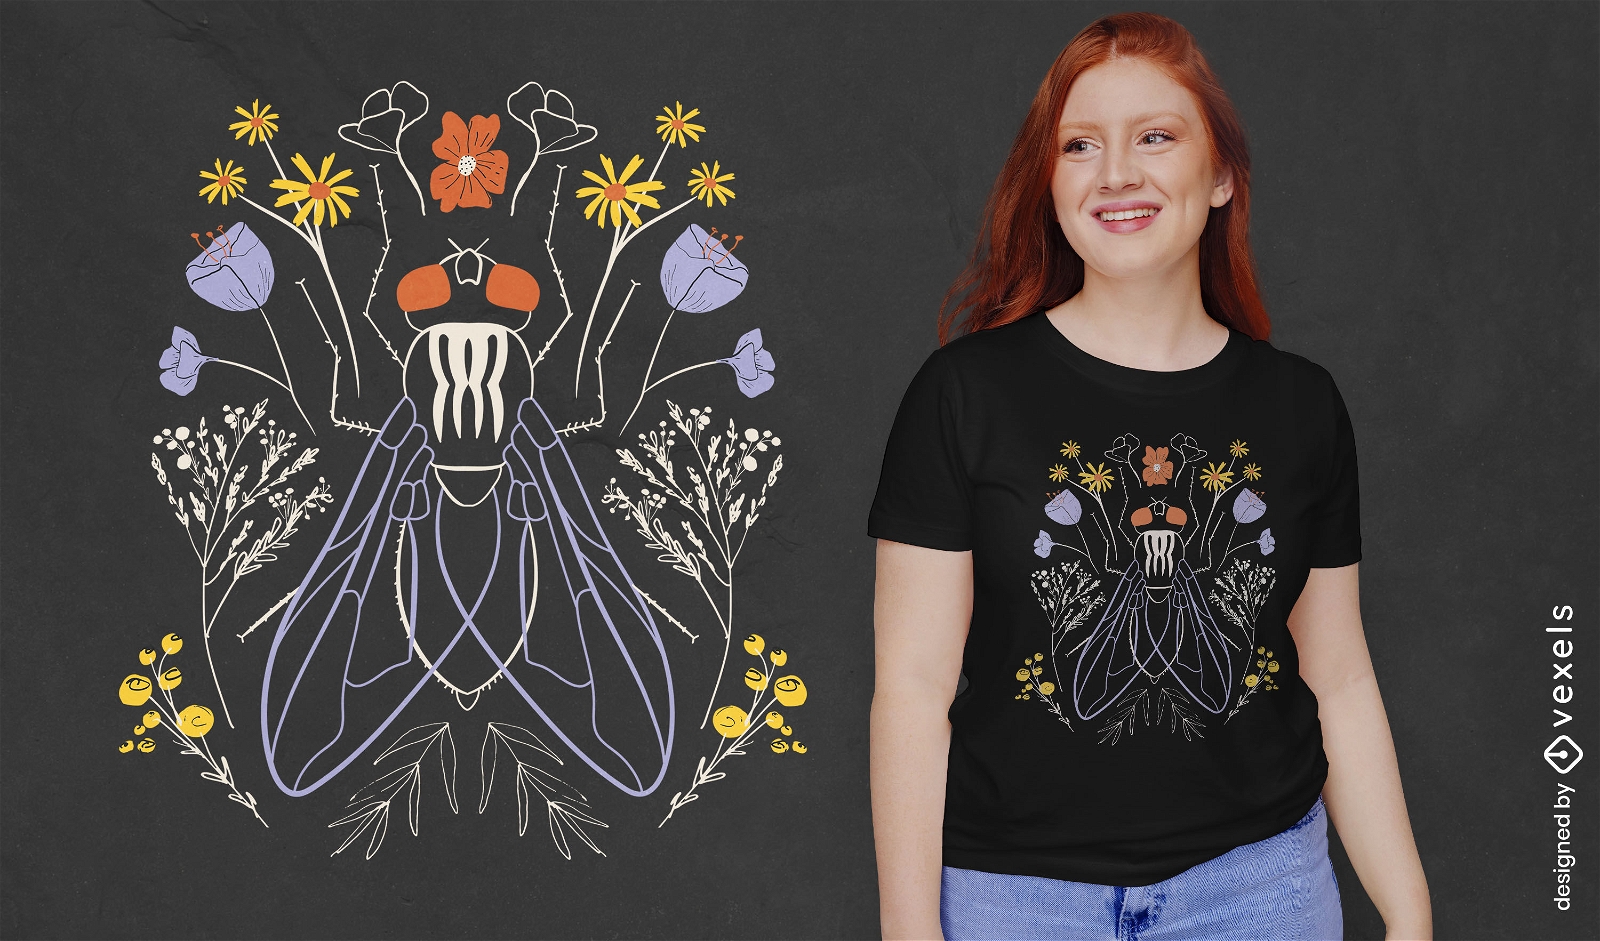 Käfer- und Blumennatur-T-Shirt-Design